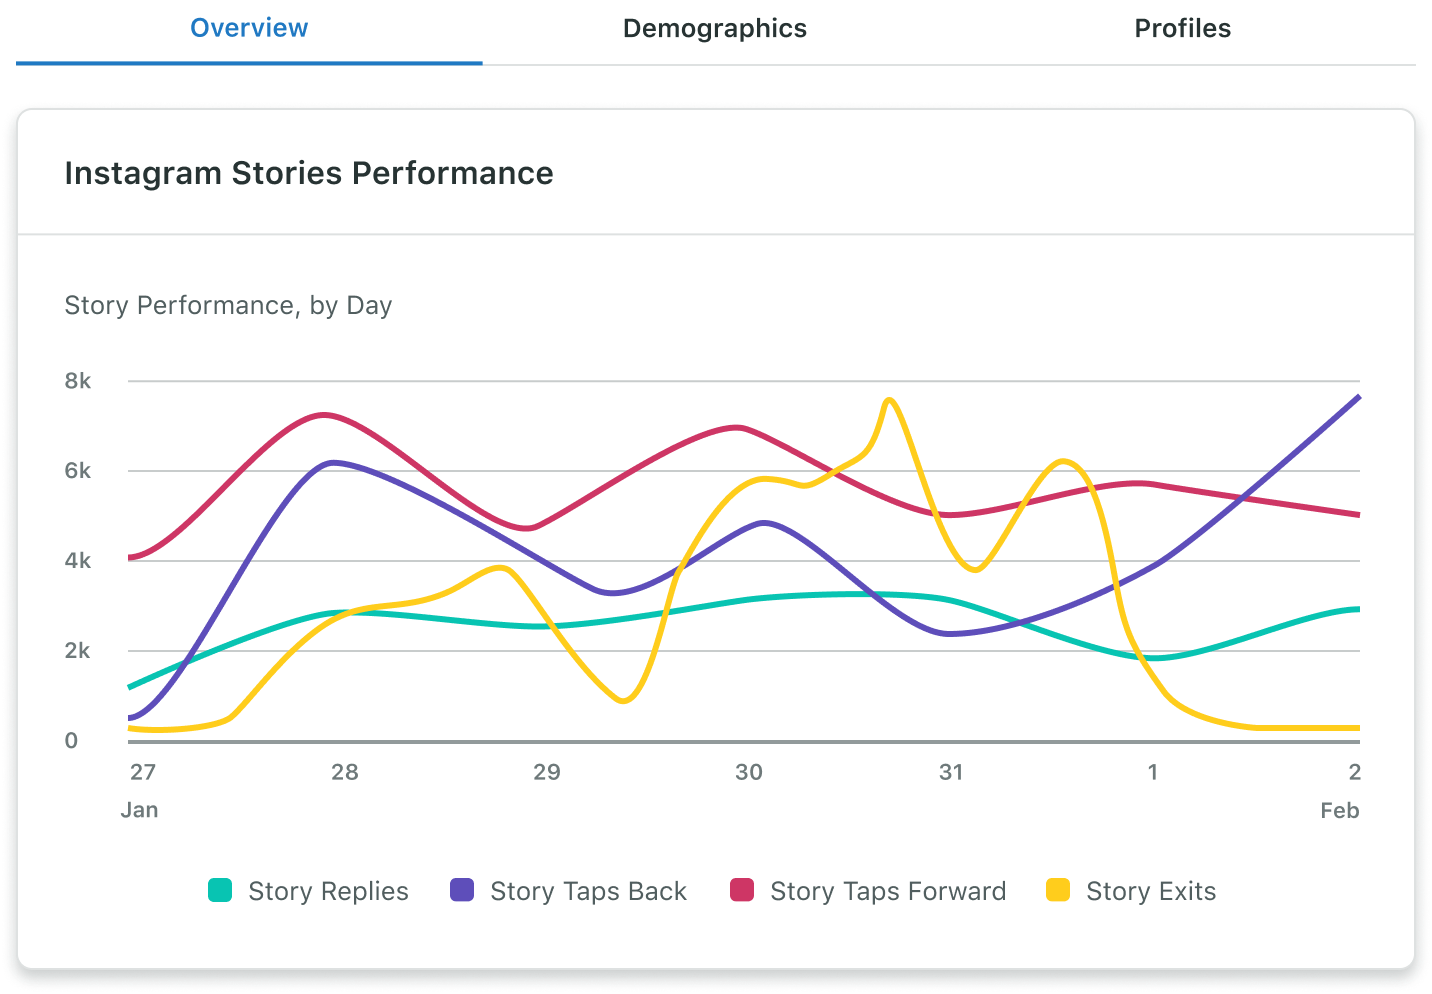 El Informe de los perfiles empresariales de Instagram de Sprout incluye datos diarios del rendimiento de historias, como respuestas, cantidad de veces que los usuarios volvieron a la historia anterior, avanzaron para ver la siguiente o abandonaron la historia durante un intervalo de fechas seleccionado.